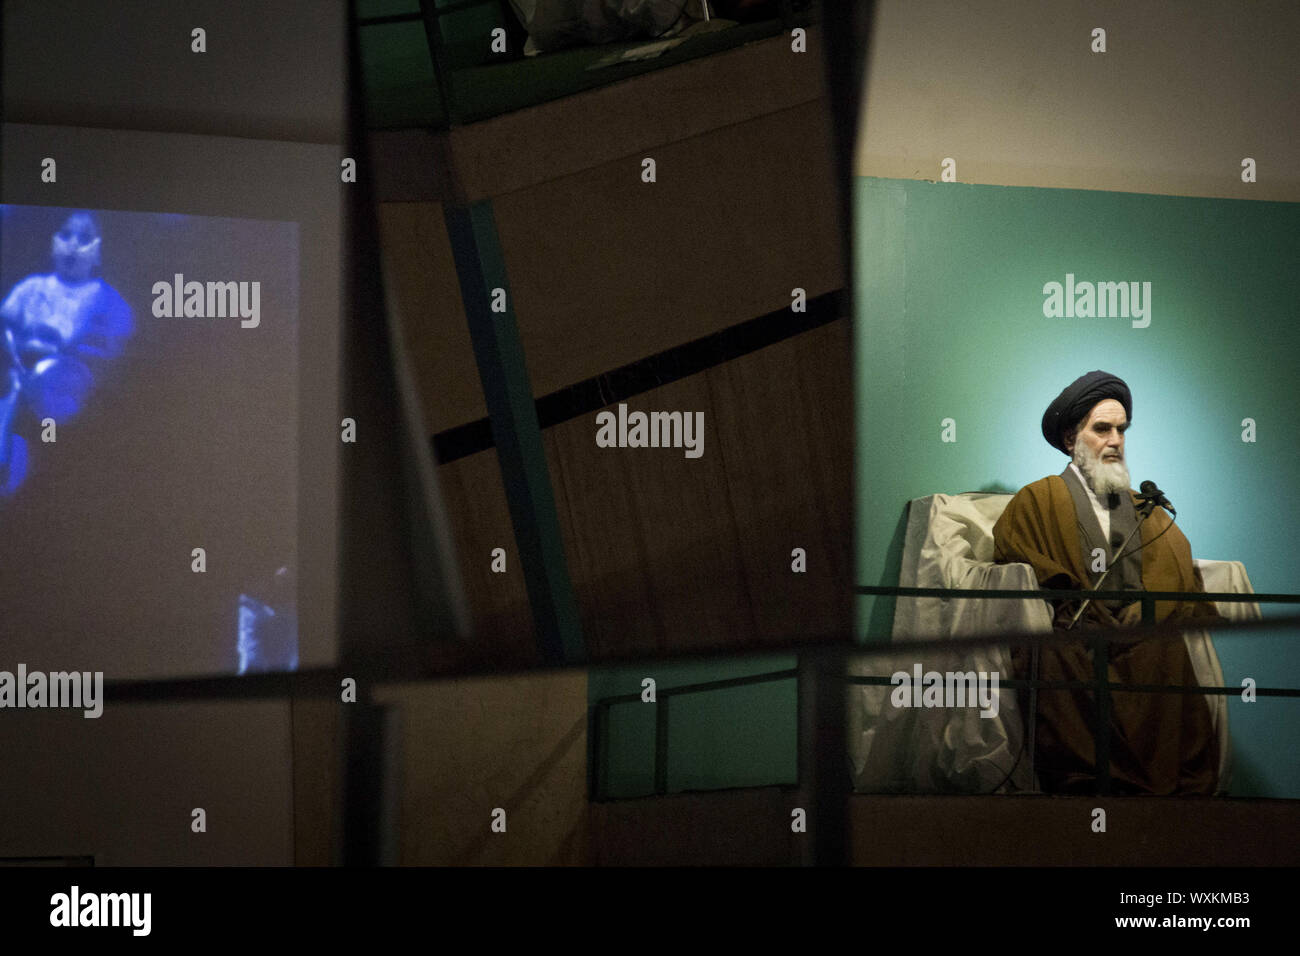 16 septembre 2019, Téhéran, Iran : Statue de Rouhollah Khomeini, ancien chef suprême de l'Iran est vu à la défense Saint Museum (Musée de la guerre) dans la capitale Téhéran. Le musée présente des éléments de la guerre Iran-Irak 1980-1988 qui a été la plus longue guerre conventionnelle de 20e siècle et a été officiellement lancé le 22 septembre 1980, lorsque les forces armées iraquiennes ont envahi l'ouest de l'Iran et s'est terminé le 20 août 1988, lorsque la République islamique d'Iran a accepté la résolution de cessez-le-feu des Nations Unies 598. Huit années de guerre avec l'Irak est connue comme la Sainte défense nationale en Iran. (Crédit Image : © Rouzbeh Fouladi/Zuma sur le fil) Banque D'Images